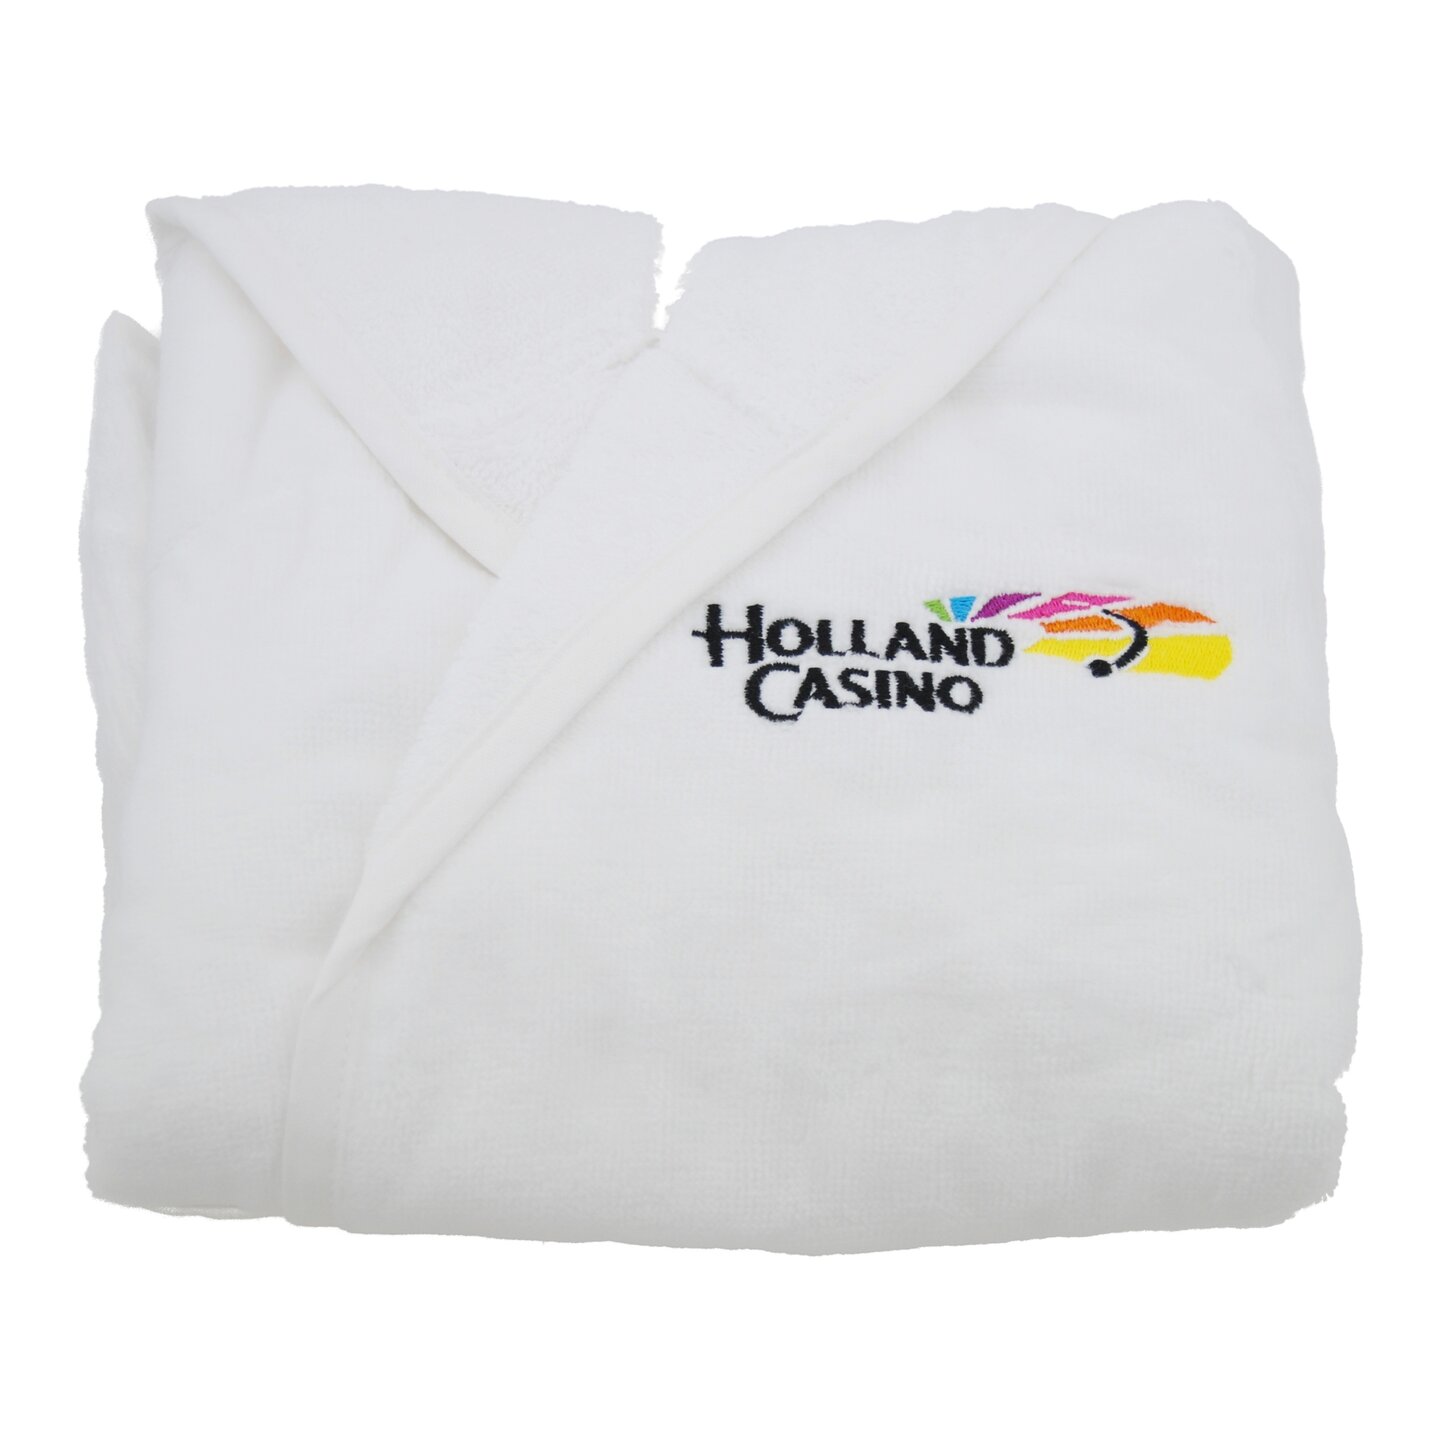 Voorbeeld badjasje met logo Holland Casino